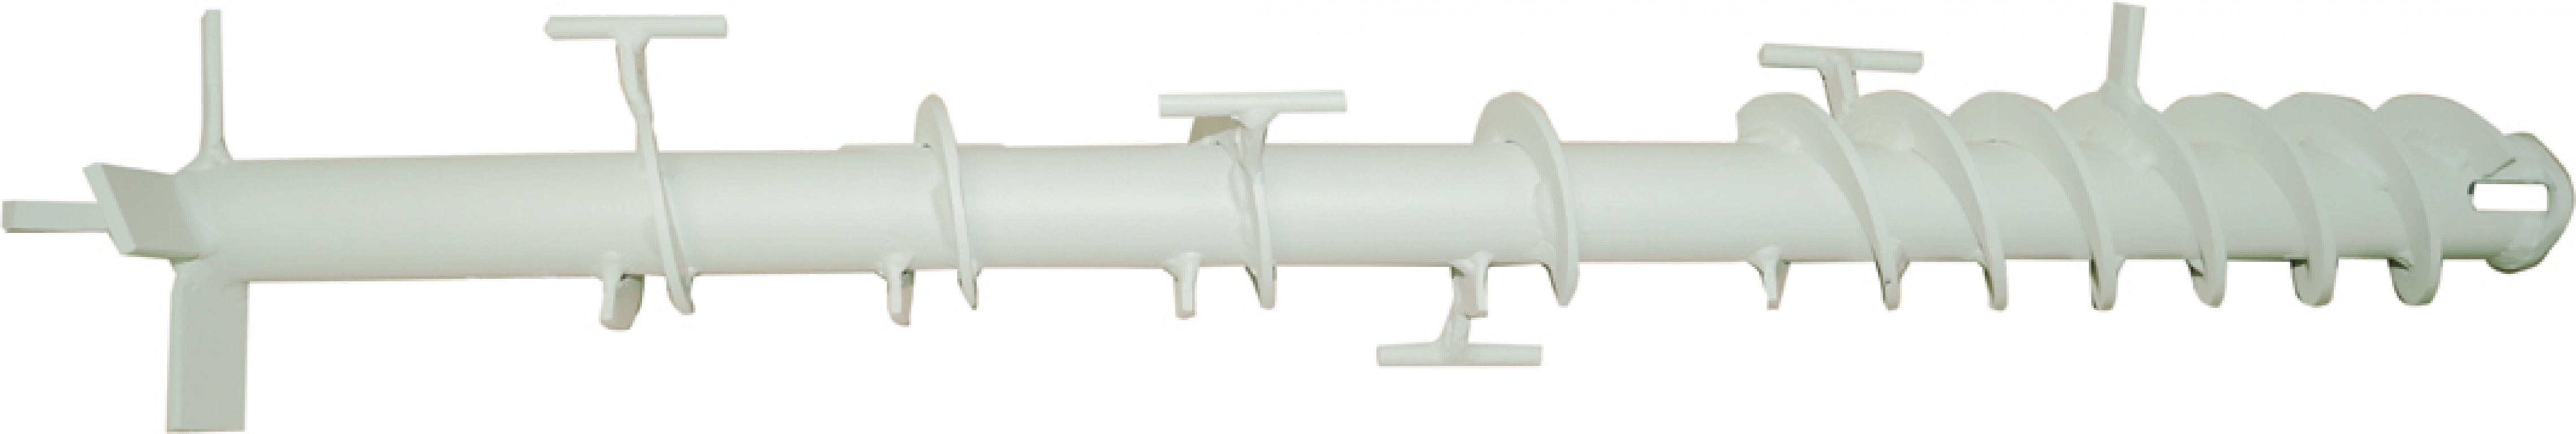 Arbre de dosage - pente 80 mm avec double pente pour kit « Ü1 » et « Ü2 »-Cabrio